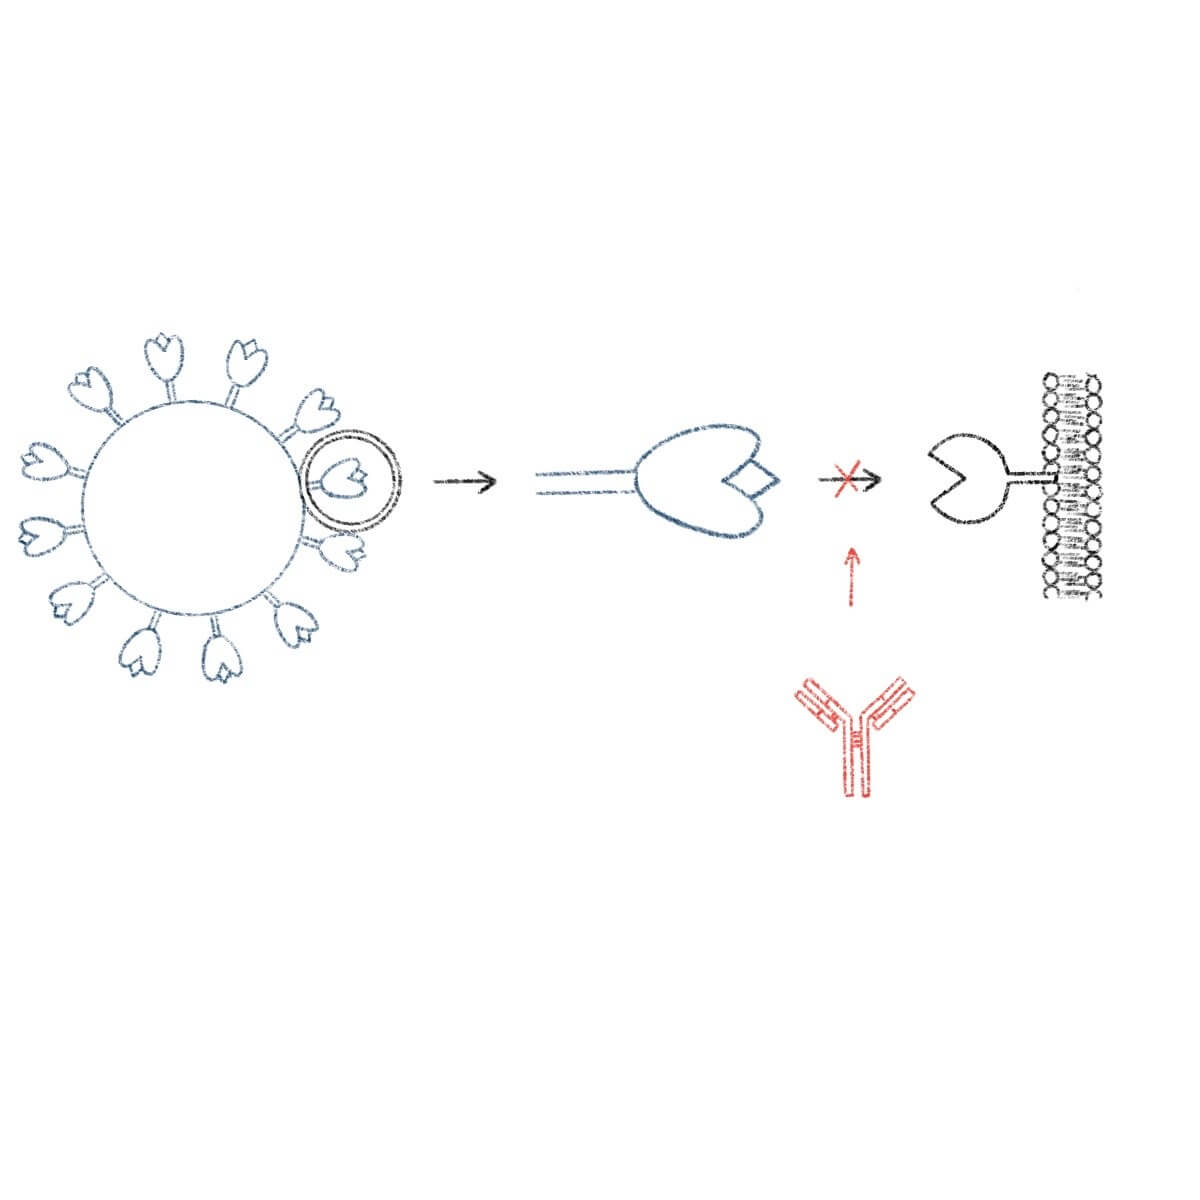 Die Antikörper verhindern eine Bindung des Spike-Proteins an die Zelle